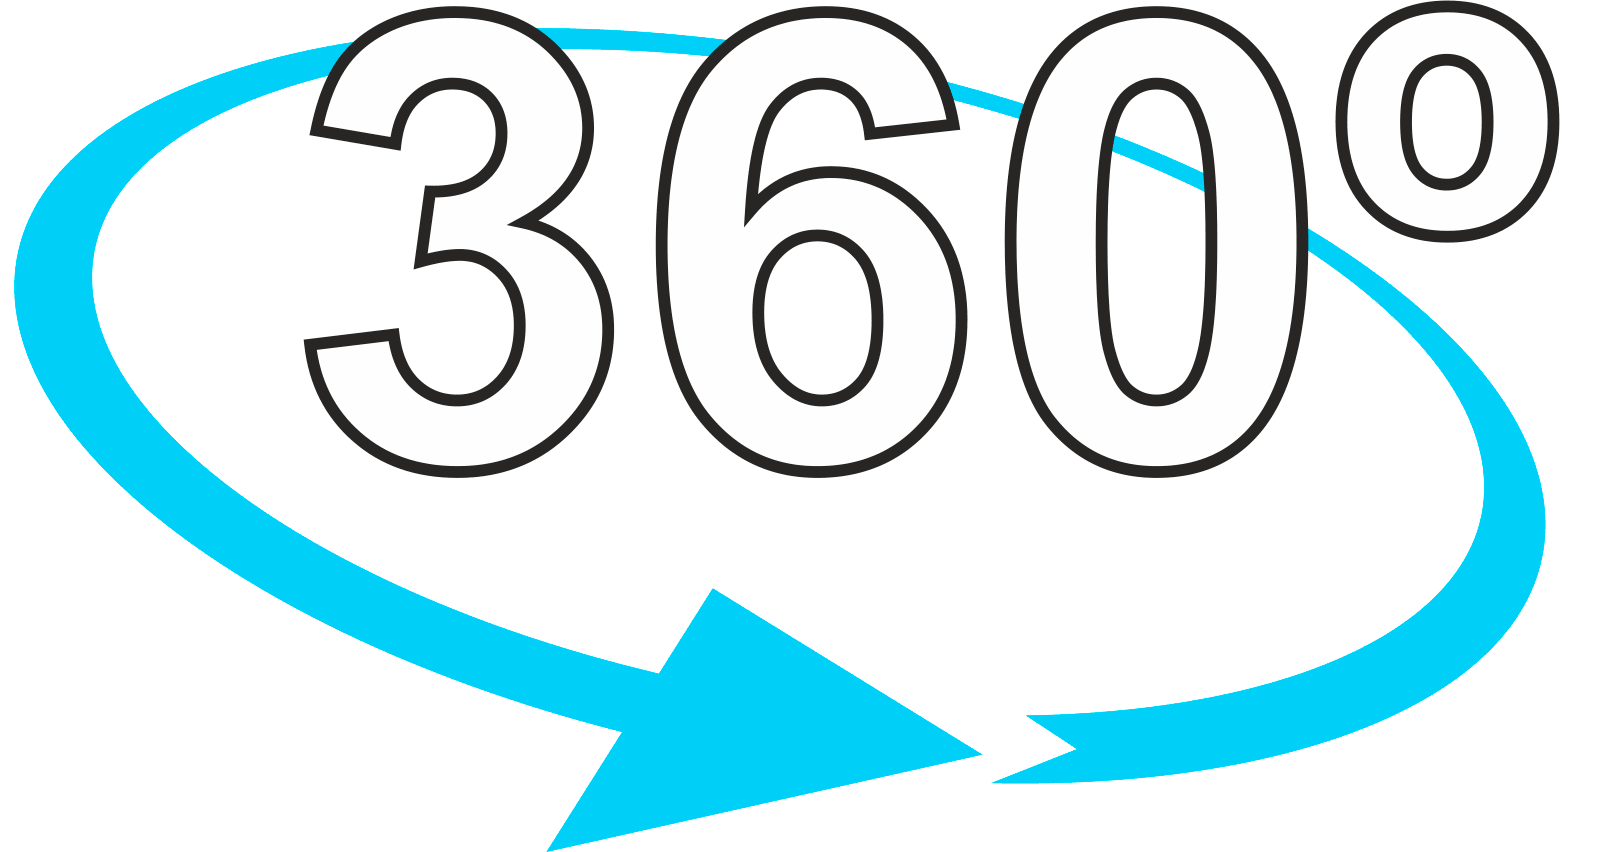 360º